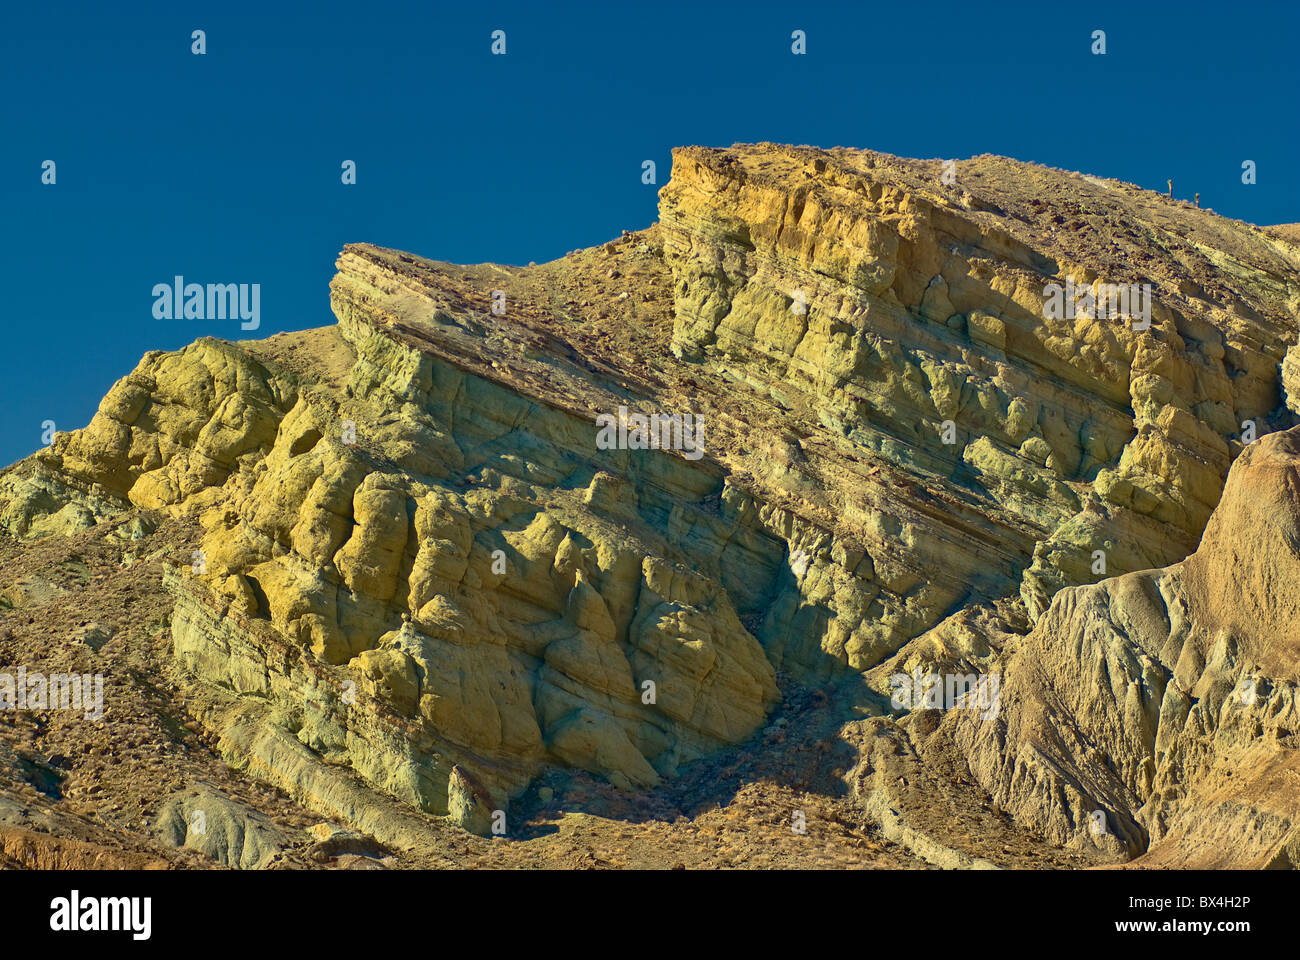 Le formazioni rocciose a Rainbow bacino naturale nazionale Landmark, fango sulle colline vicino a Barstow, Deserto Mojave, CALIFORNIA, STATI UNITI D'AMERICA Foto Stock